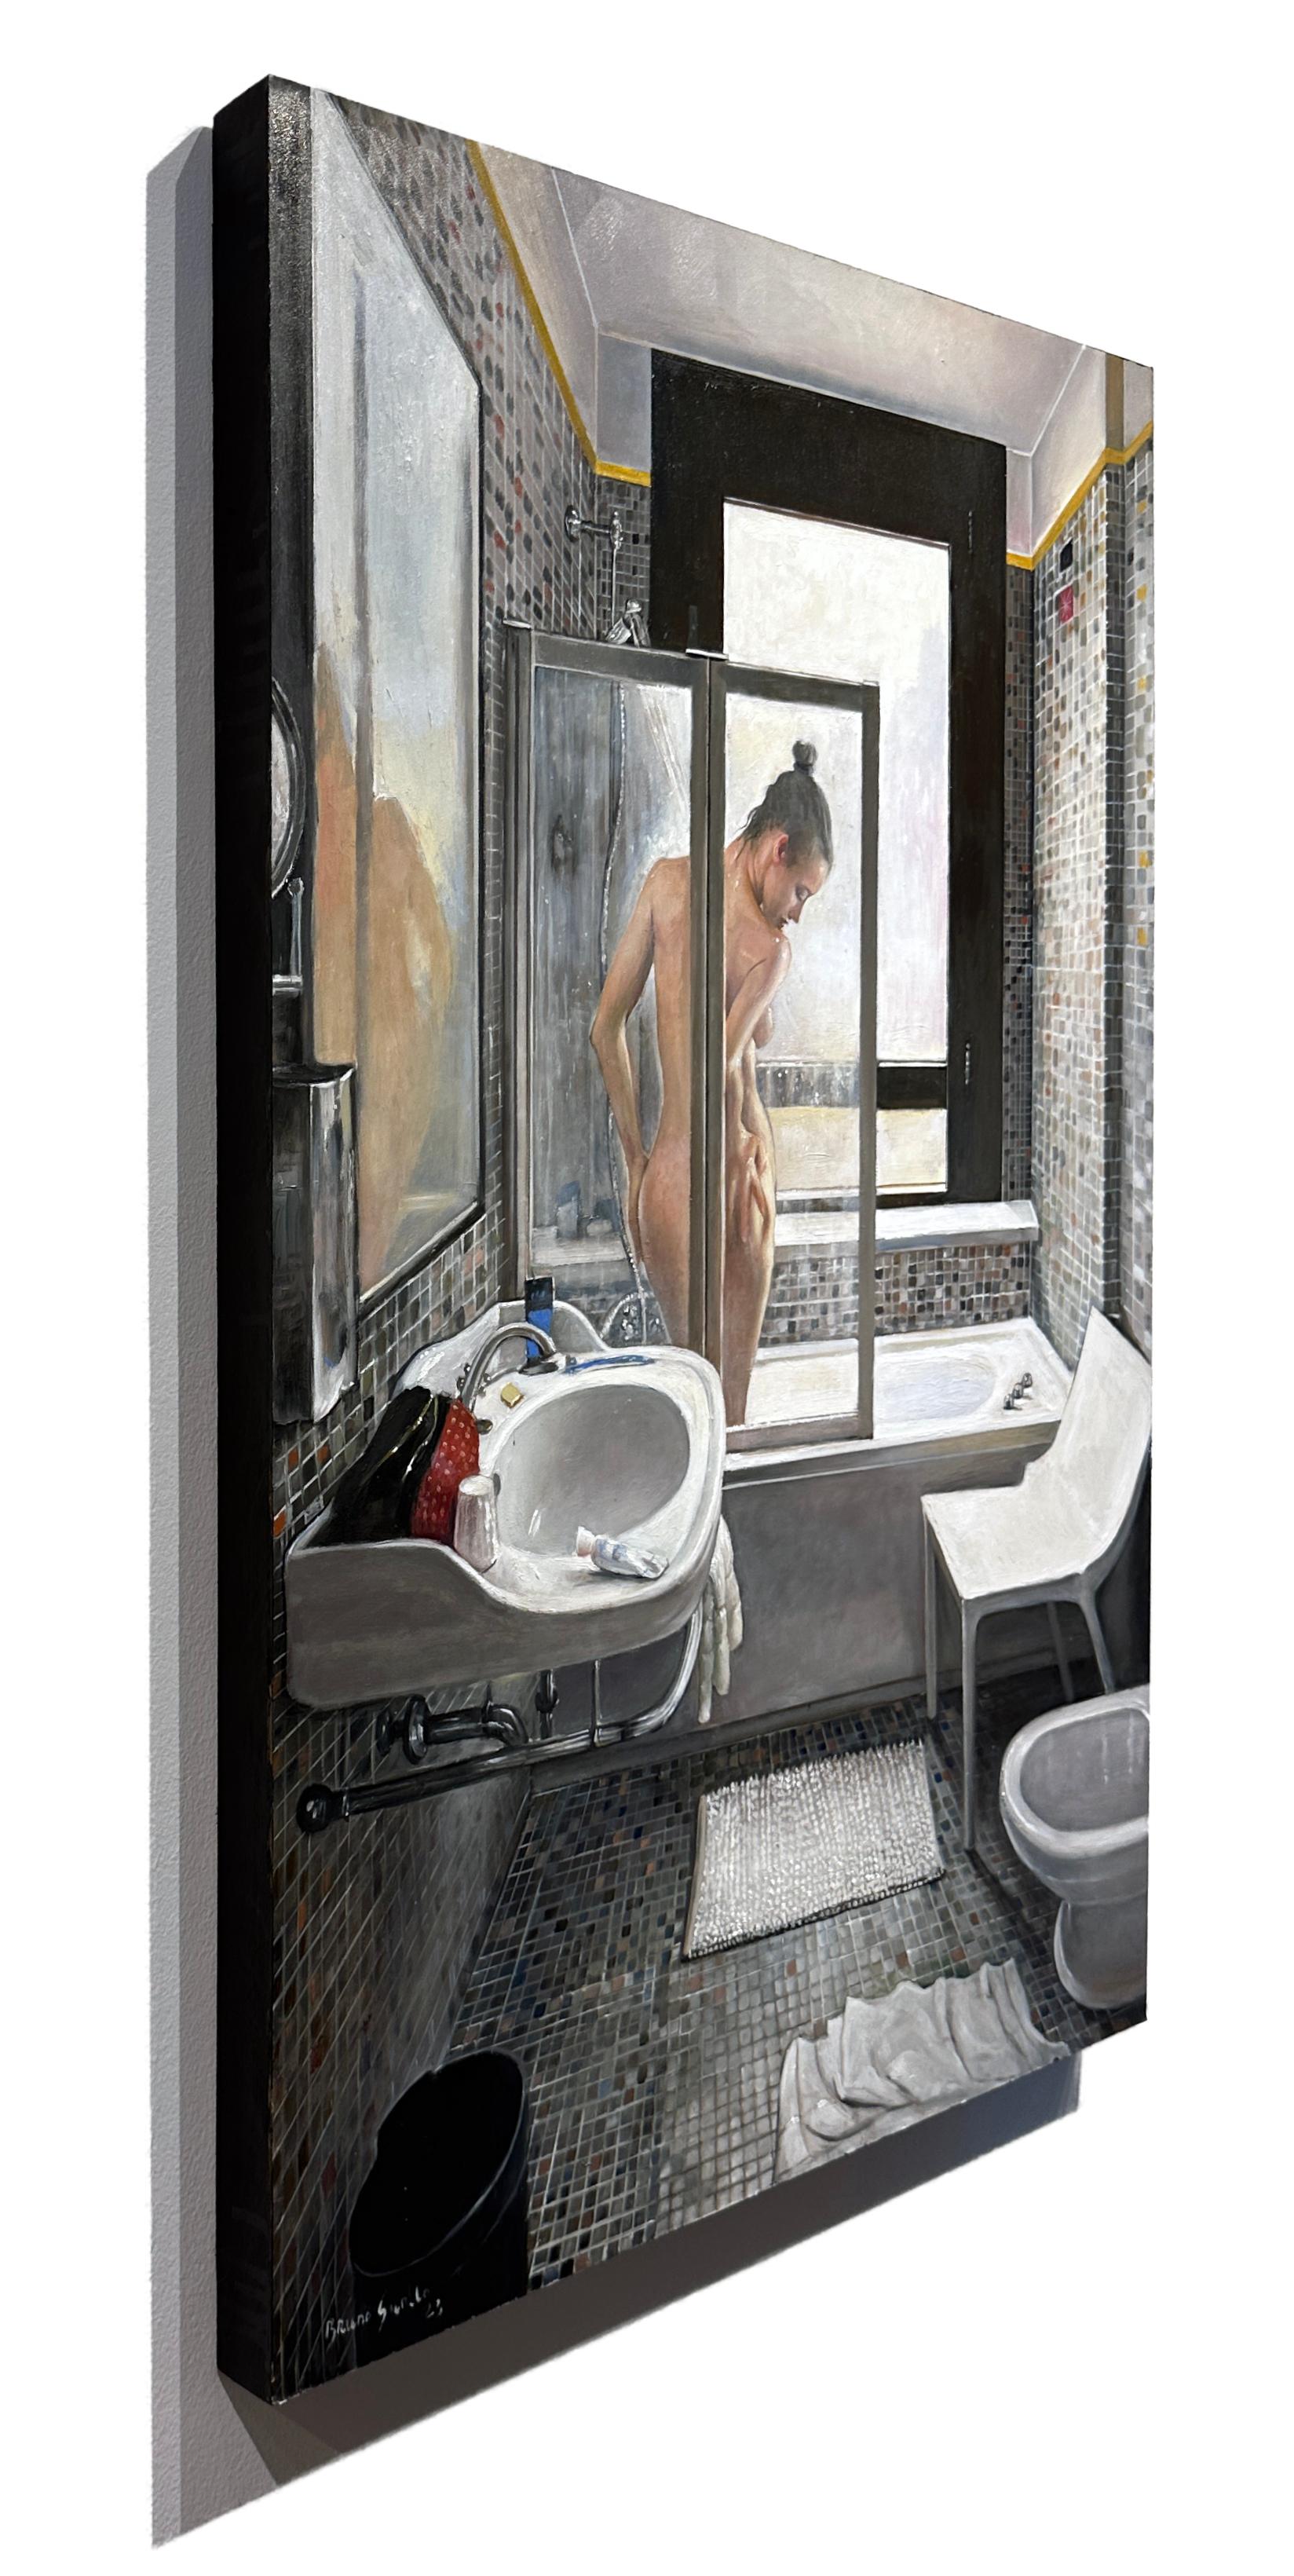 Eine ahnungslose Frau duscht in einem kleinen gekachelten Bad irgendwo in Venedig.  Dieses intime Porträt ist auf eine Platte gemalt, deren Ränder schwarz umrandet sind, so dass keine Rahmung erforderlich ist.  Bitte setzen Sie sich mit der Galerie